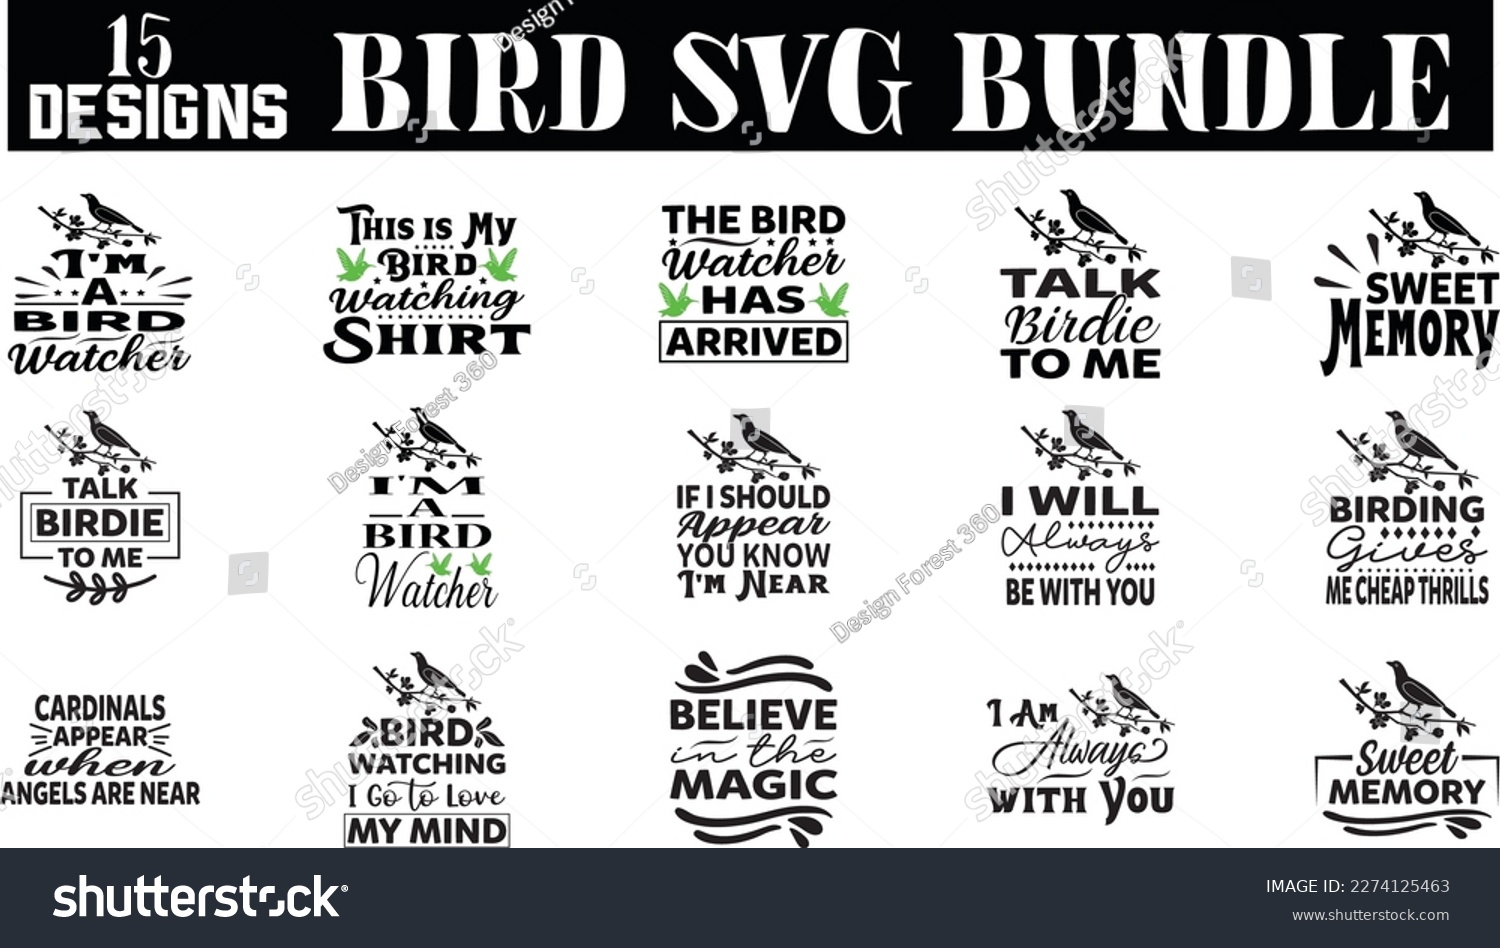 SVG of bird svg design, bird svg bundle svg